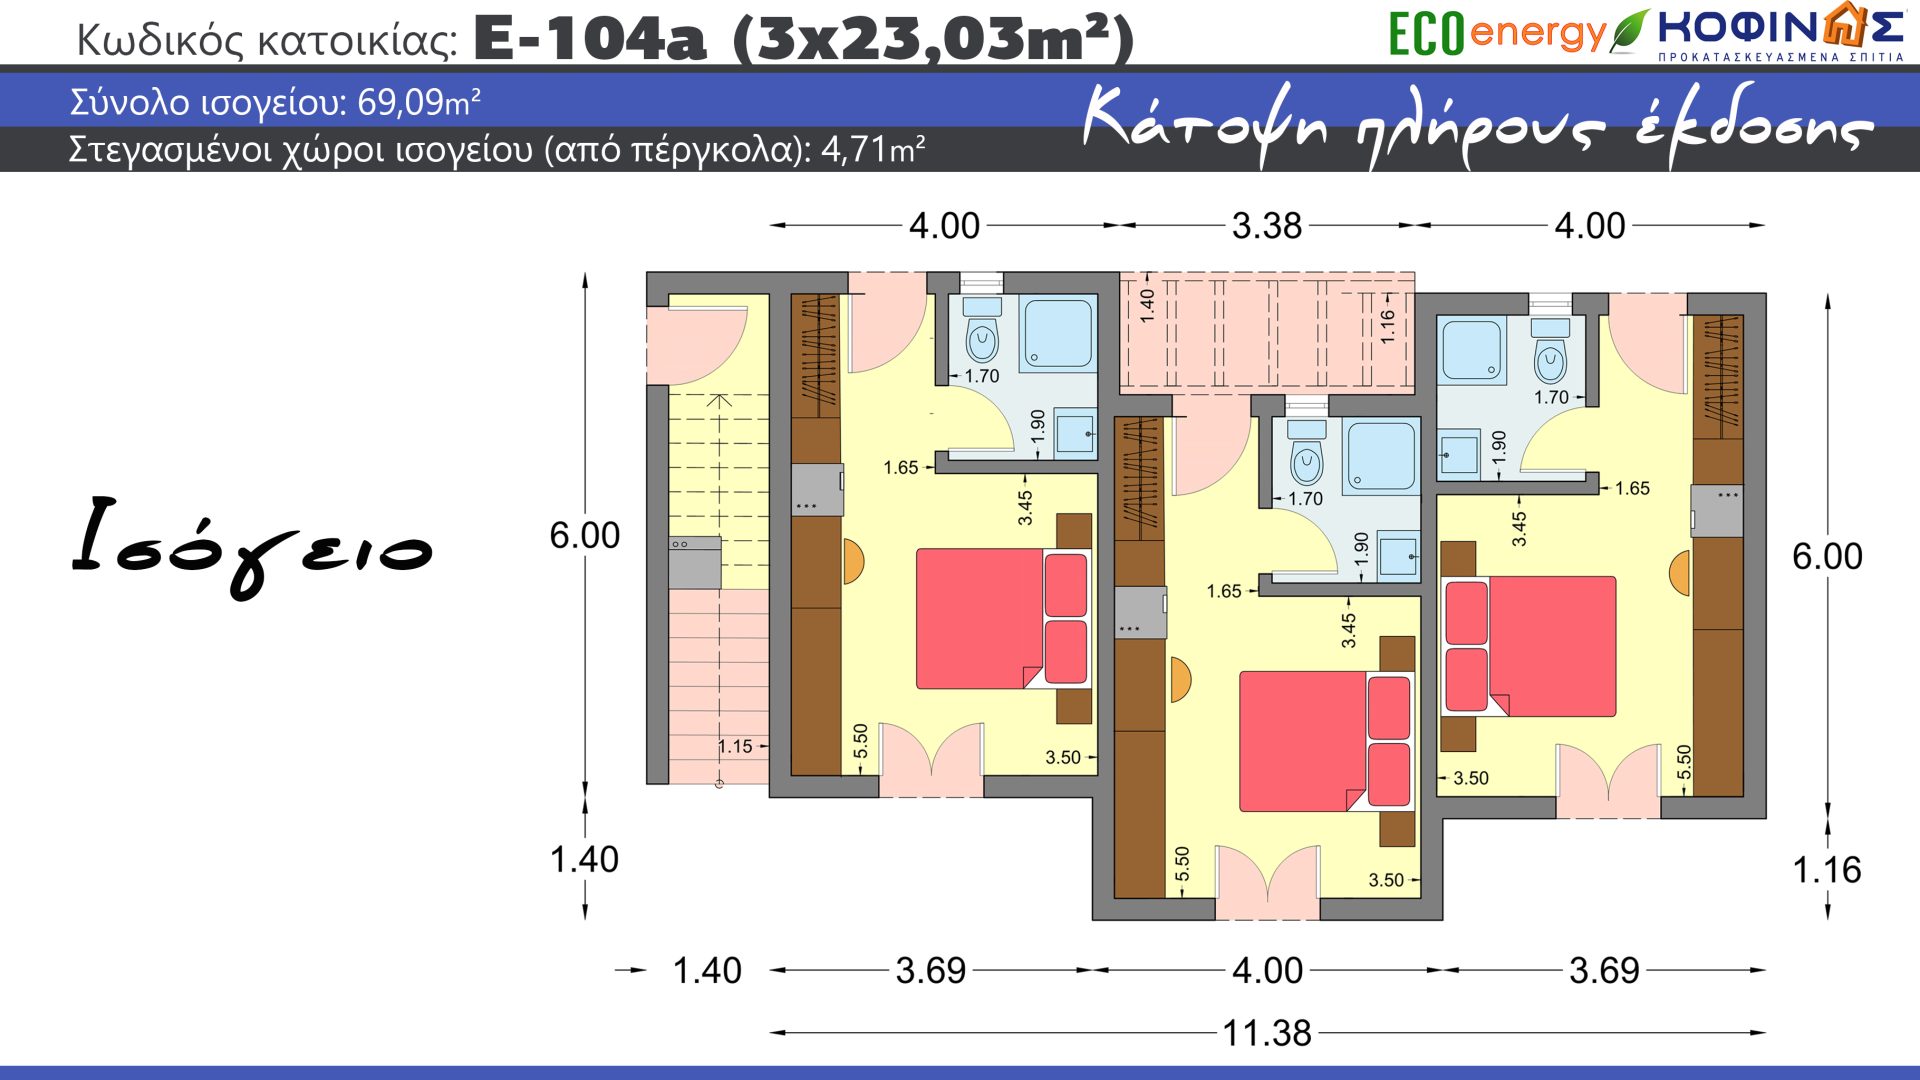 Συγκρότημα Κατοικιών E-104a, συνολικής επιφάνειας 3 x 23.03=69.09 τ.μ. +35,37 τ.μ. (όροφος)= 104,46 τ.μ., συνολική επιφάνεια στεγασμένων χώρων 4.71 m², Μπαλκόνια: 35,69 m²